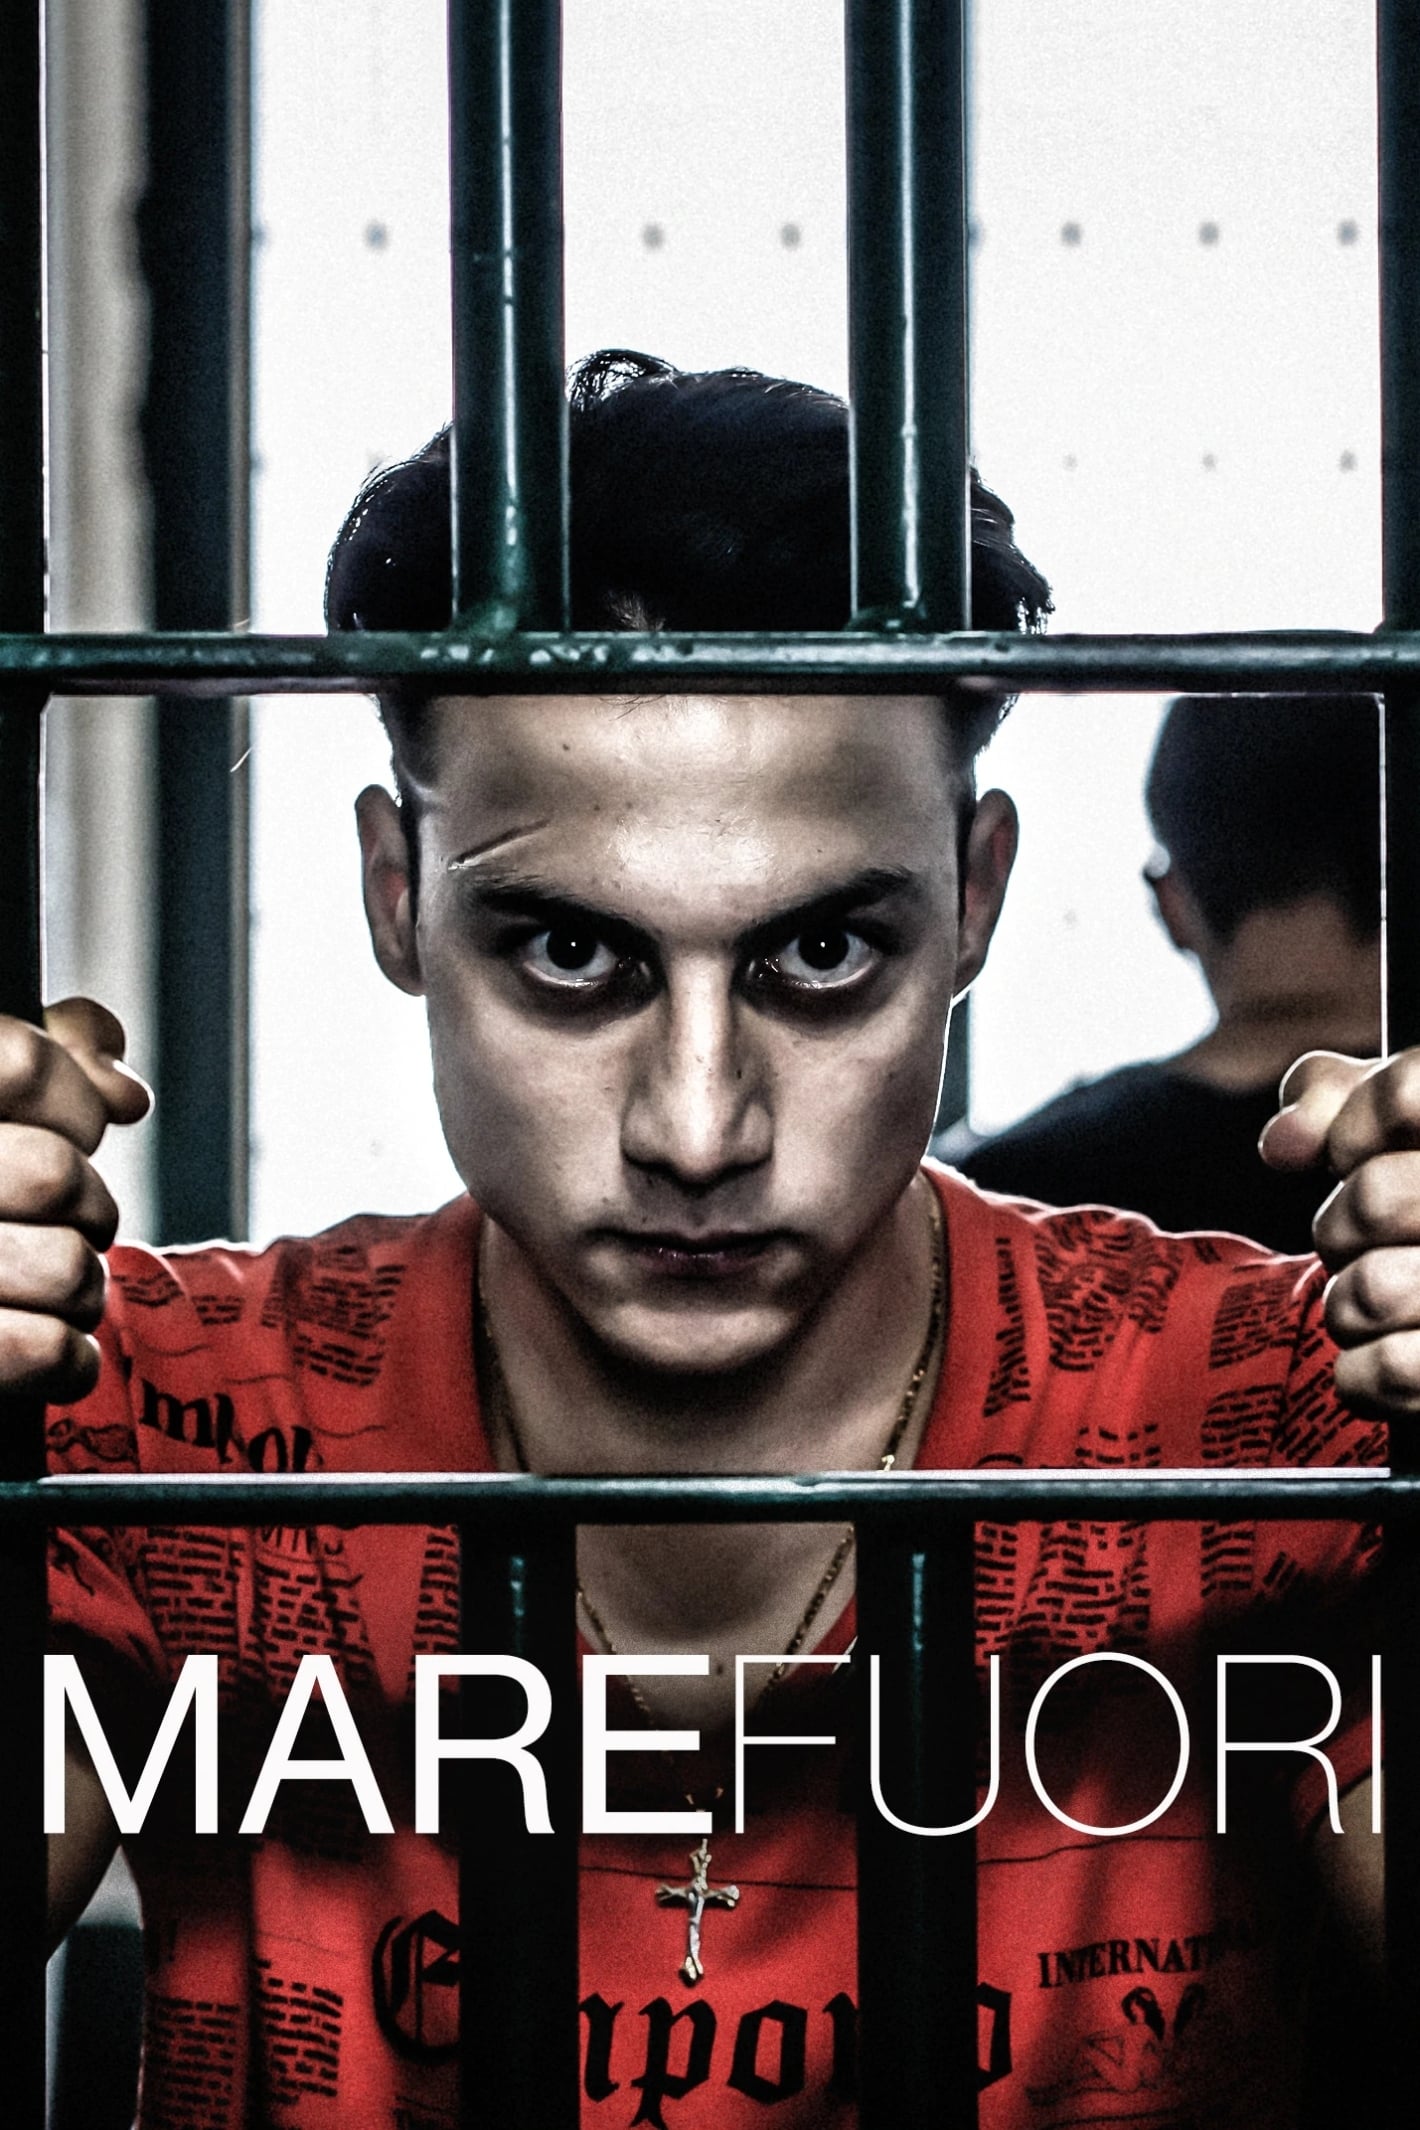 Mare Fuori TV Shows About Prison